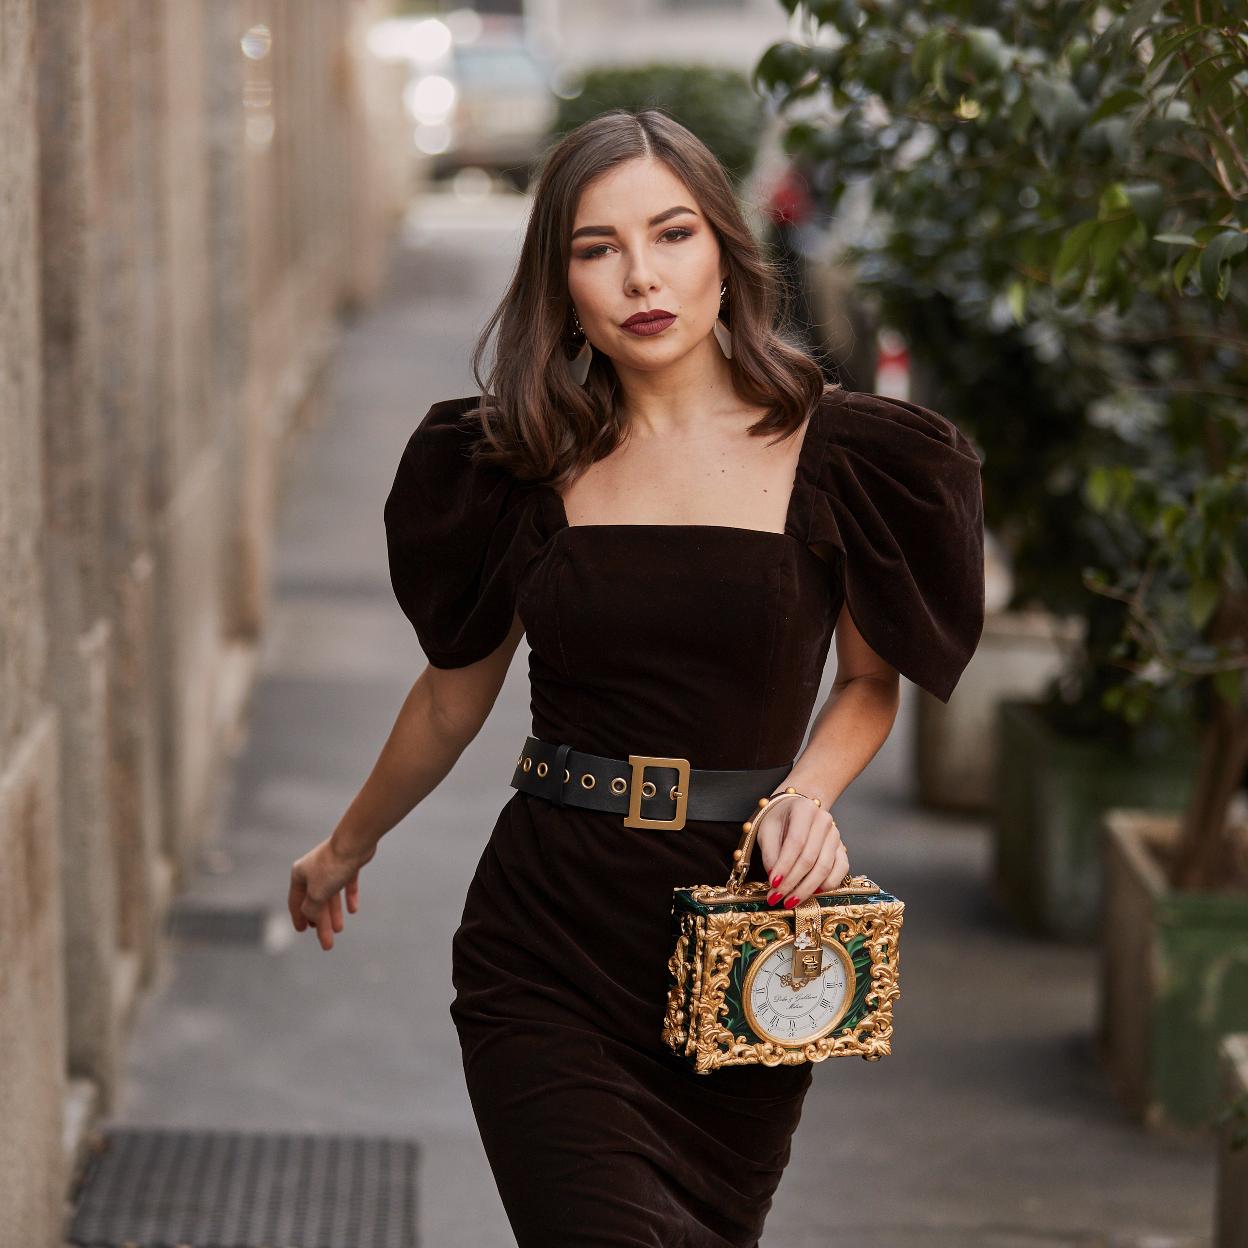 De lana, o de terciopelo: los vestidos de Massimo Dutti para los looks fiesta se adaptan a los estilos | Mujer Hoy